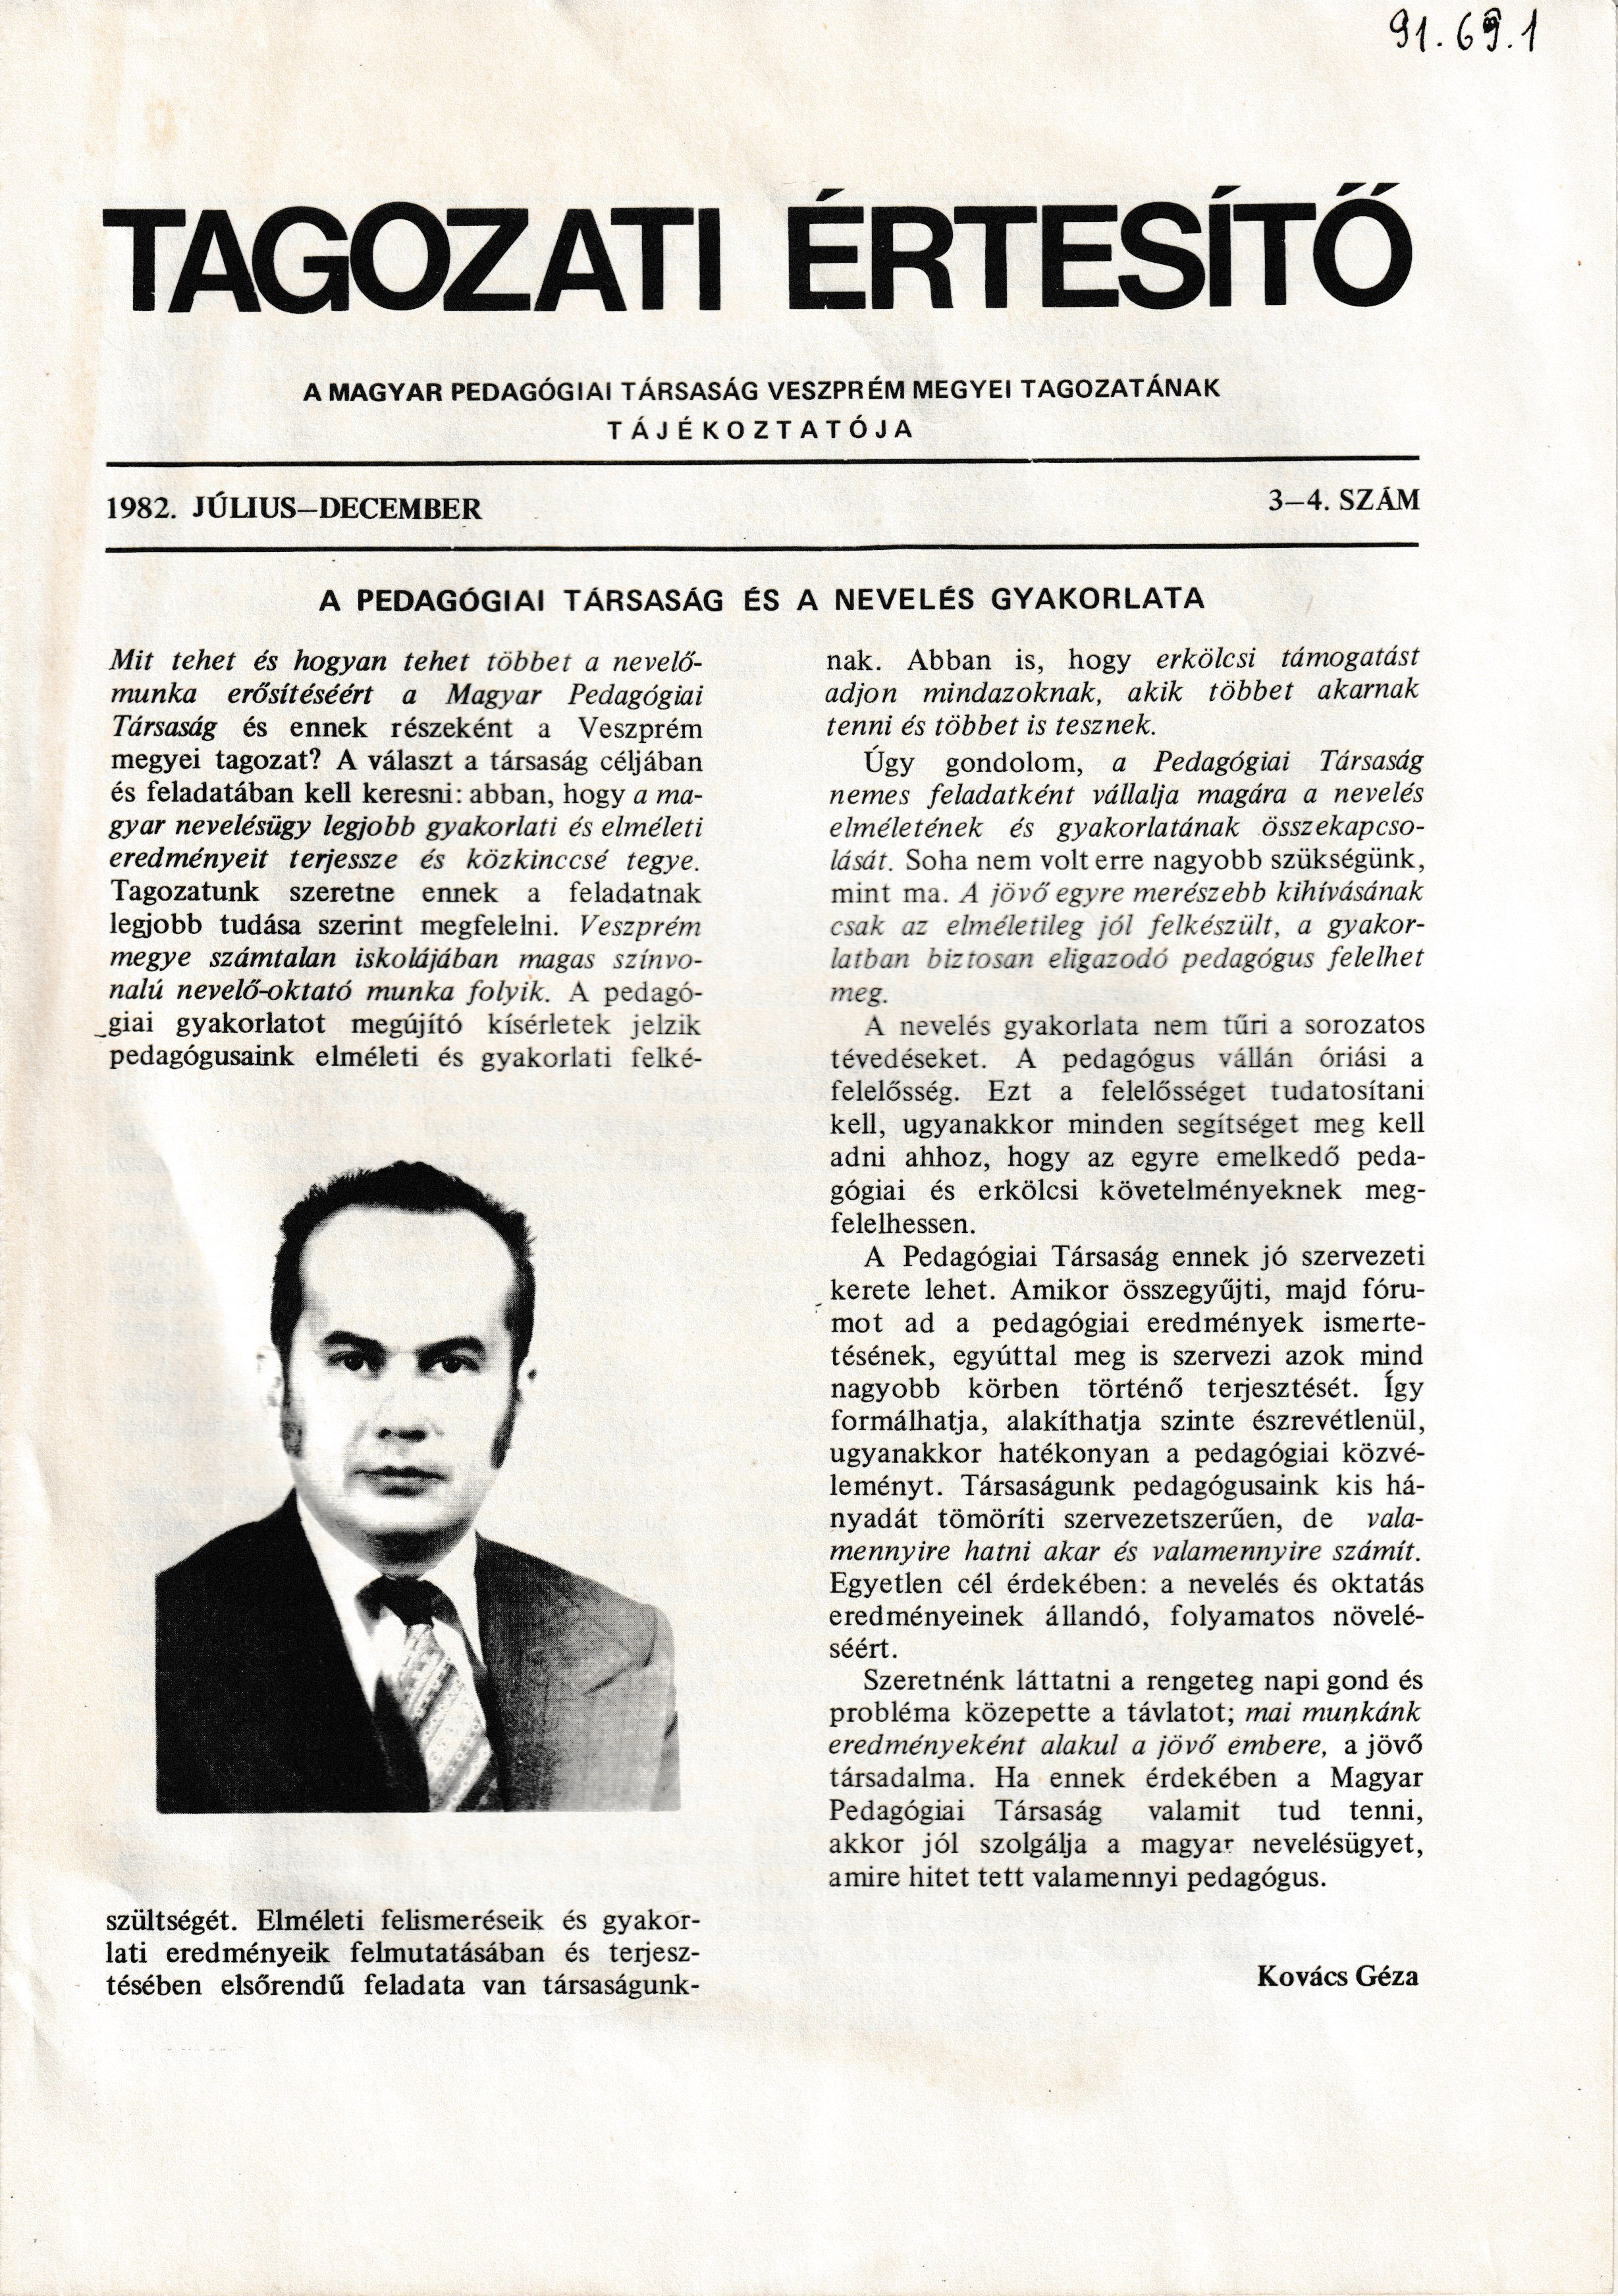 A Magyar Pedagógiai Társaság veszprémi Tagozati Értesítője 1982/3-4. szám (Tapolcai Városi Múzeum CC BY-NC-SA)